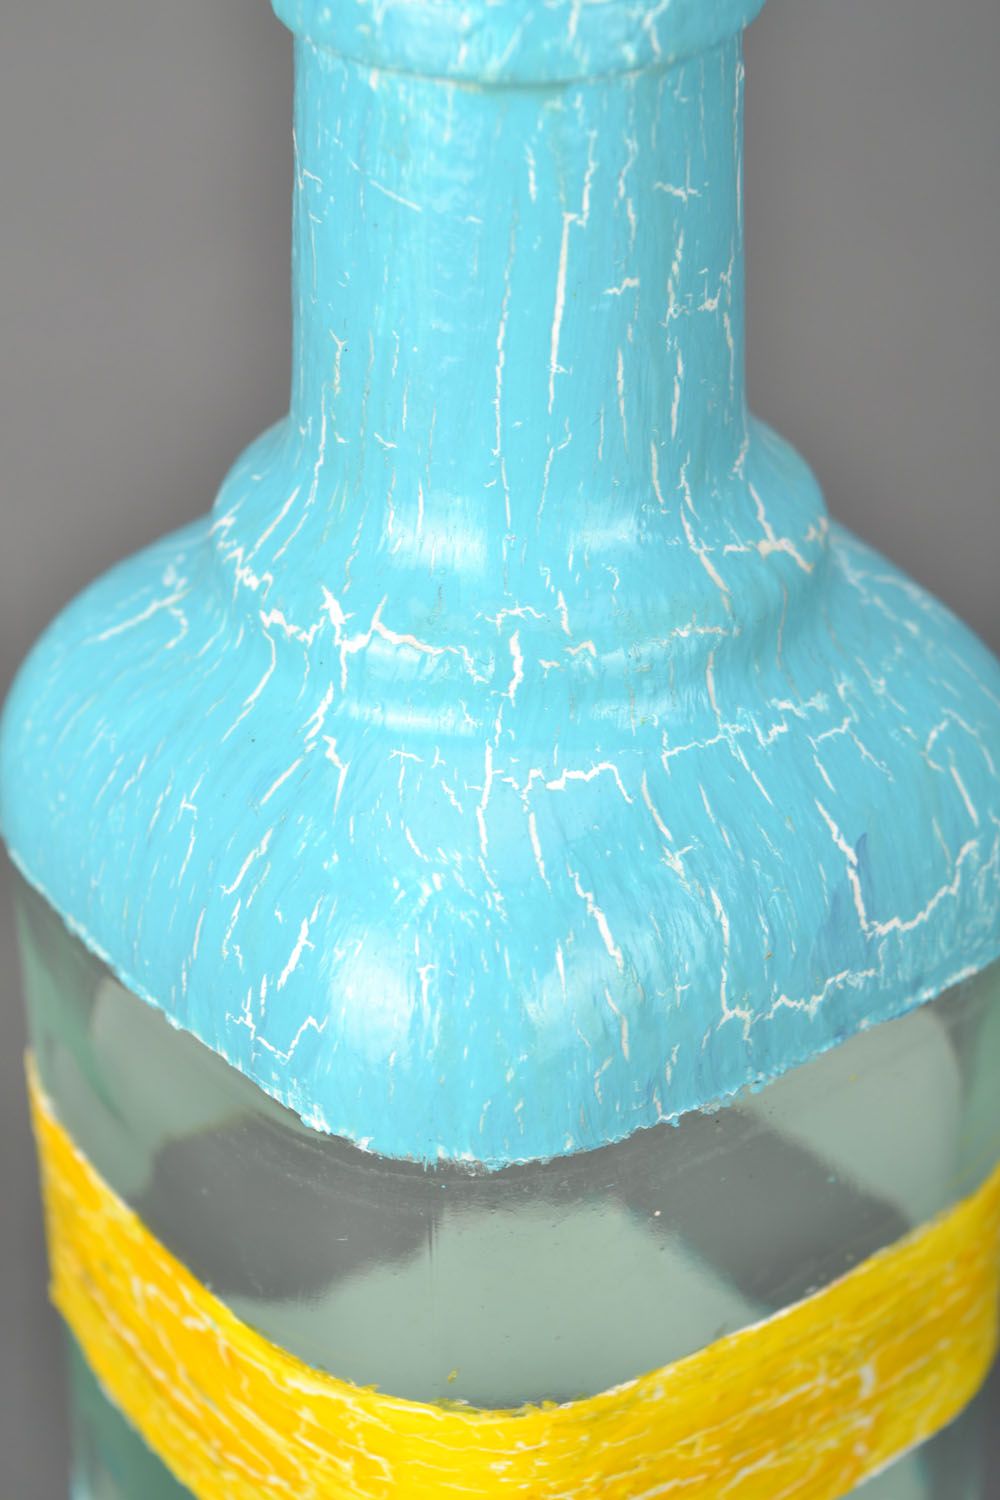 Decorative bottle photo 3